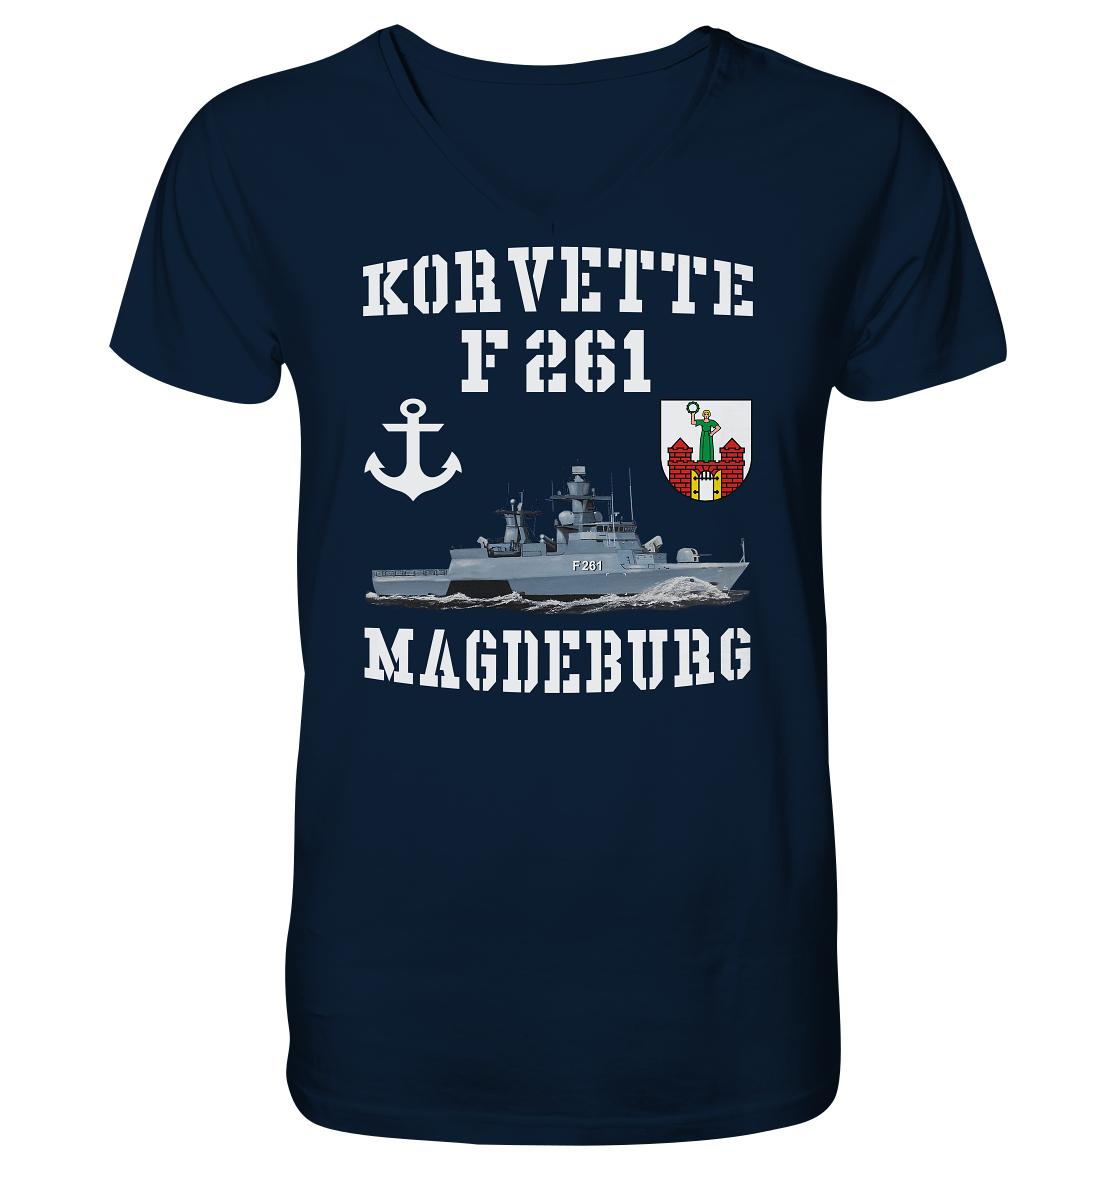 Korvette F261 MAGDEBURG Anker - Mens Organic V-Neck Shirt